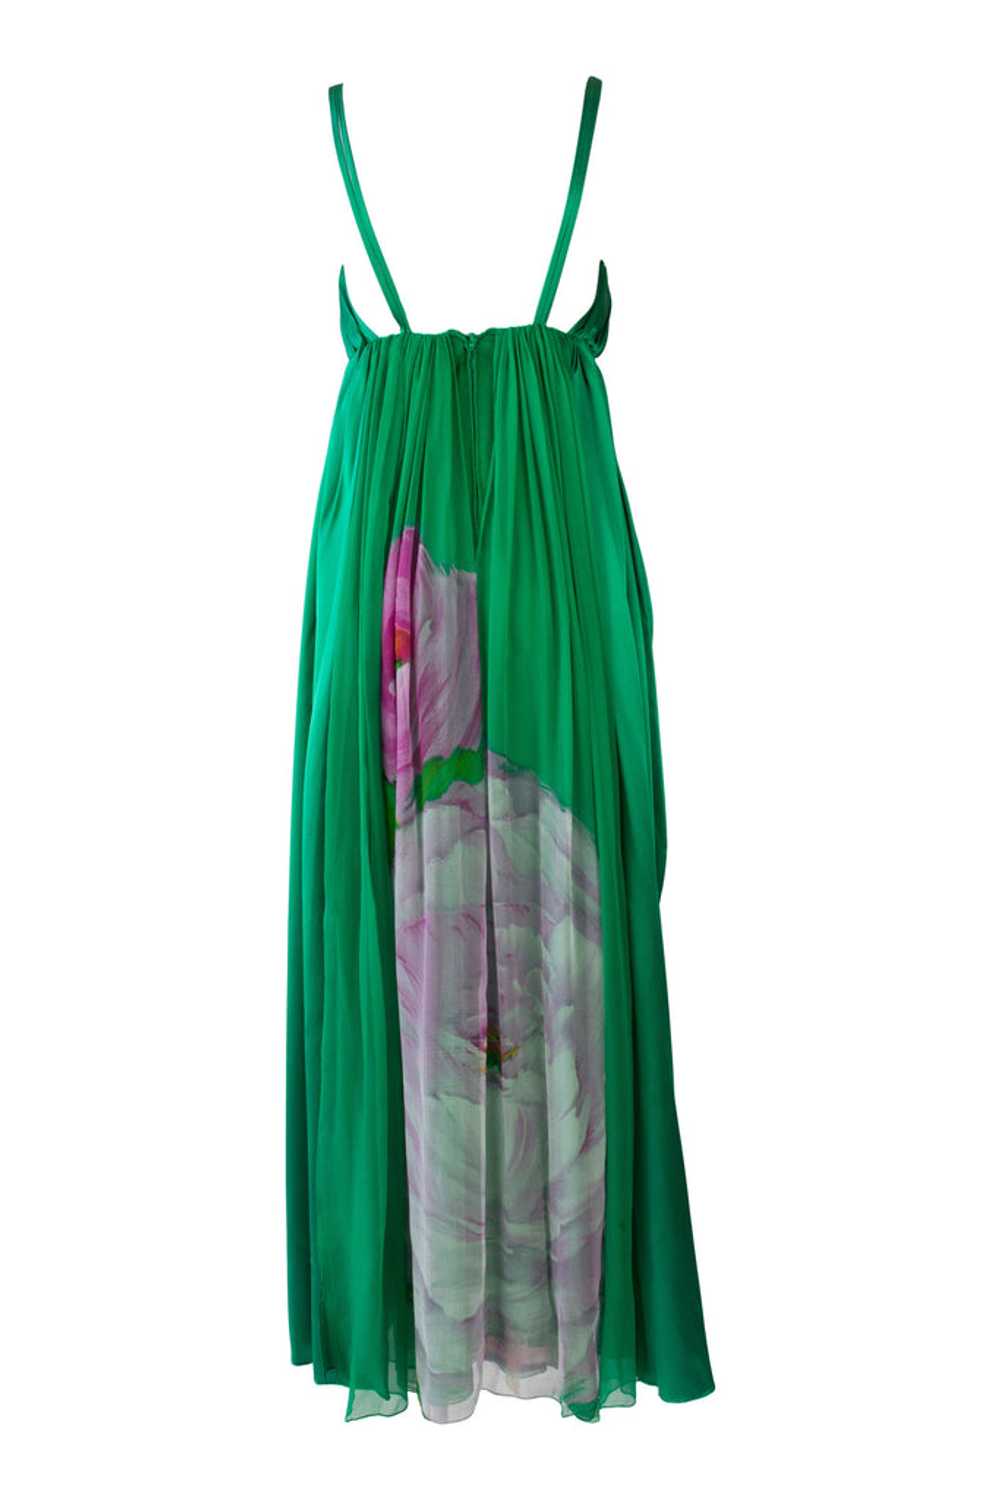 1970's Green Empire Waist Dress - image 2